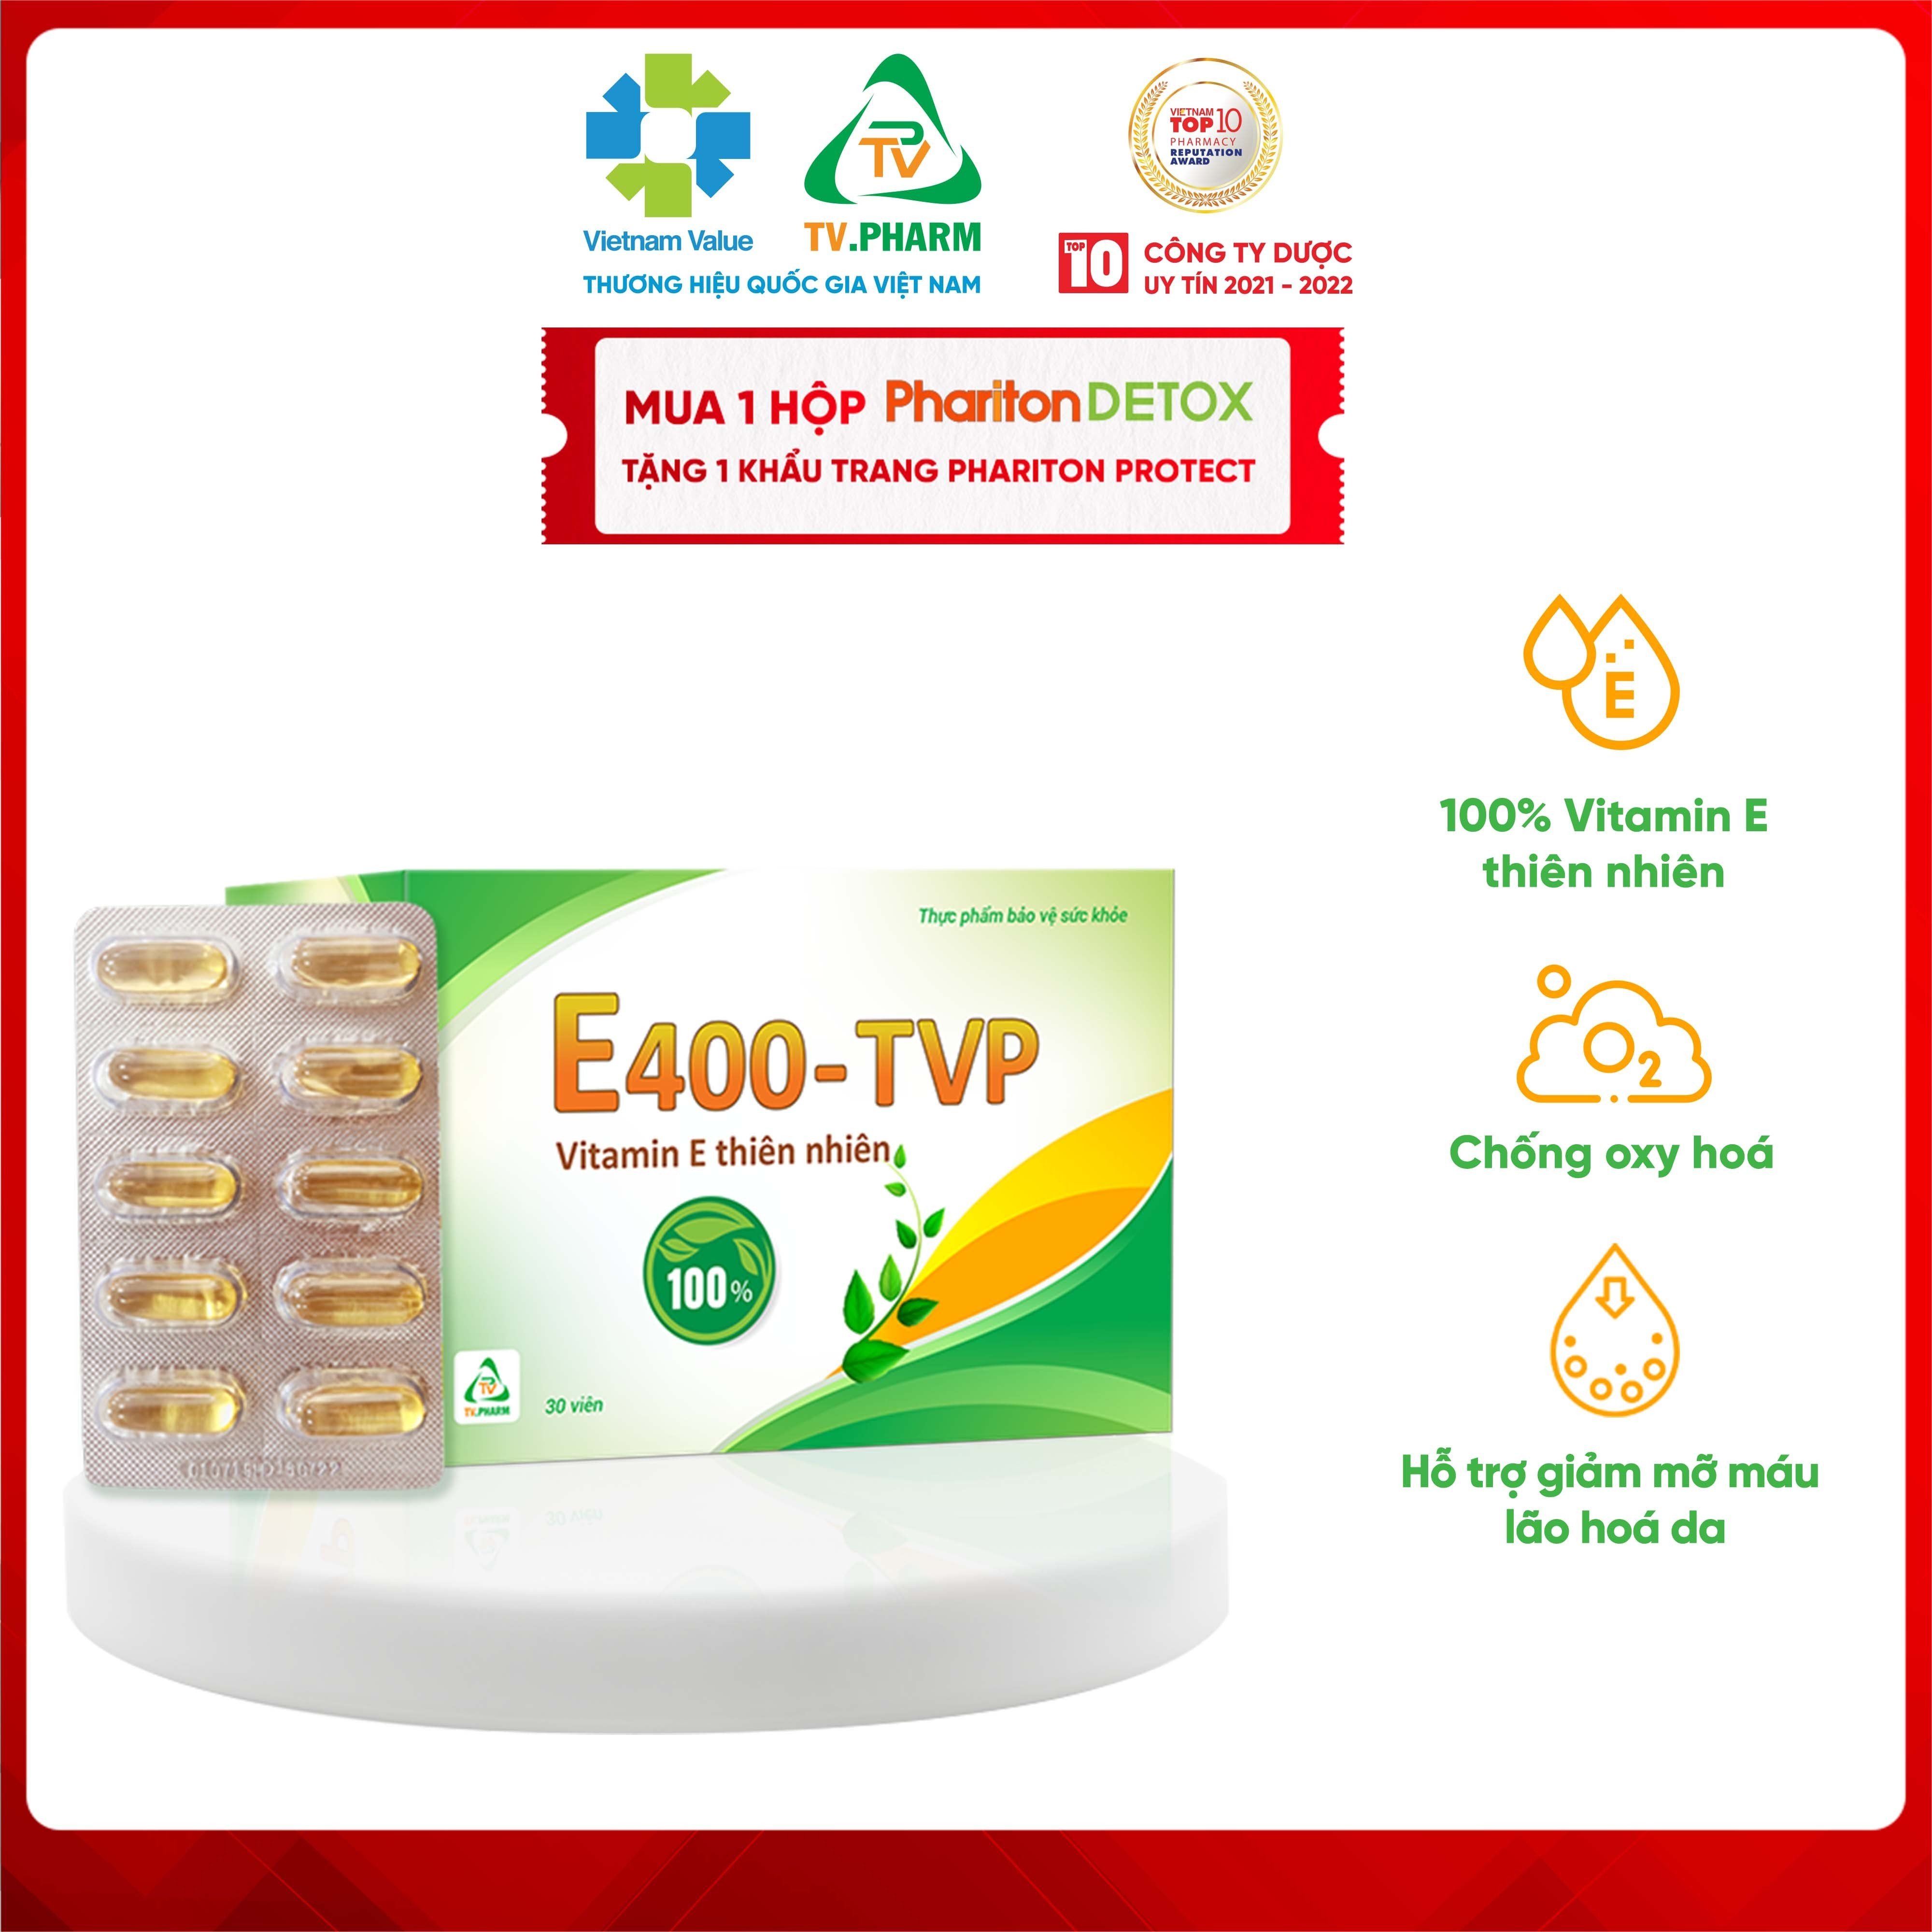 Thực phẩm bảo vệ sức khỏe E400 TVP - Bổ sung Vitamin E thiên nhiên